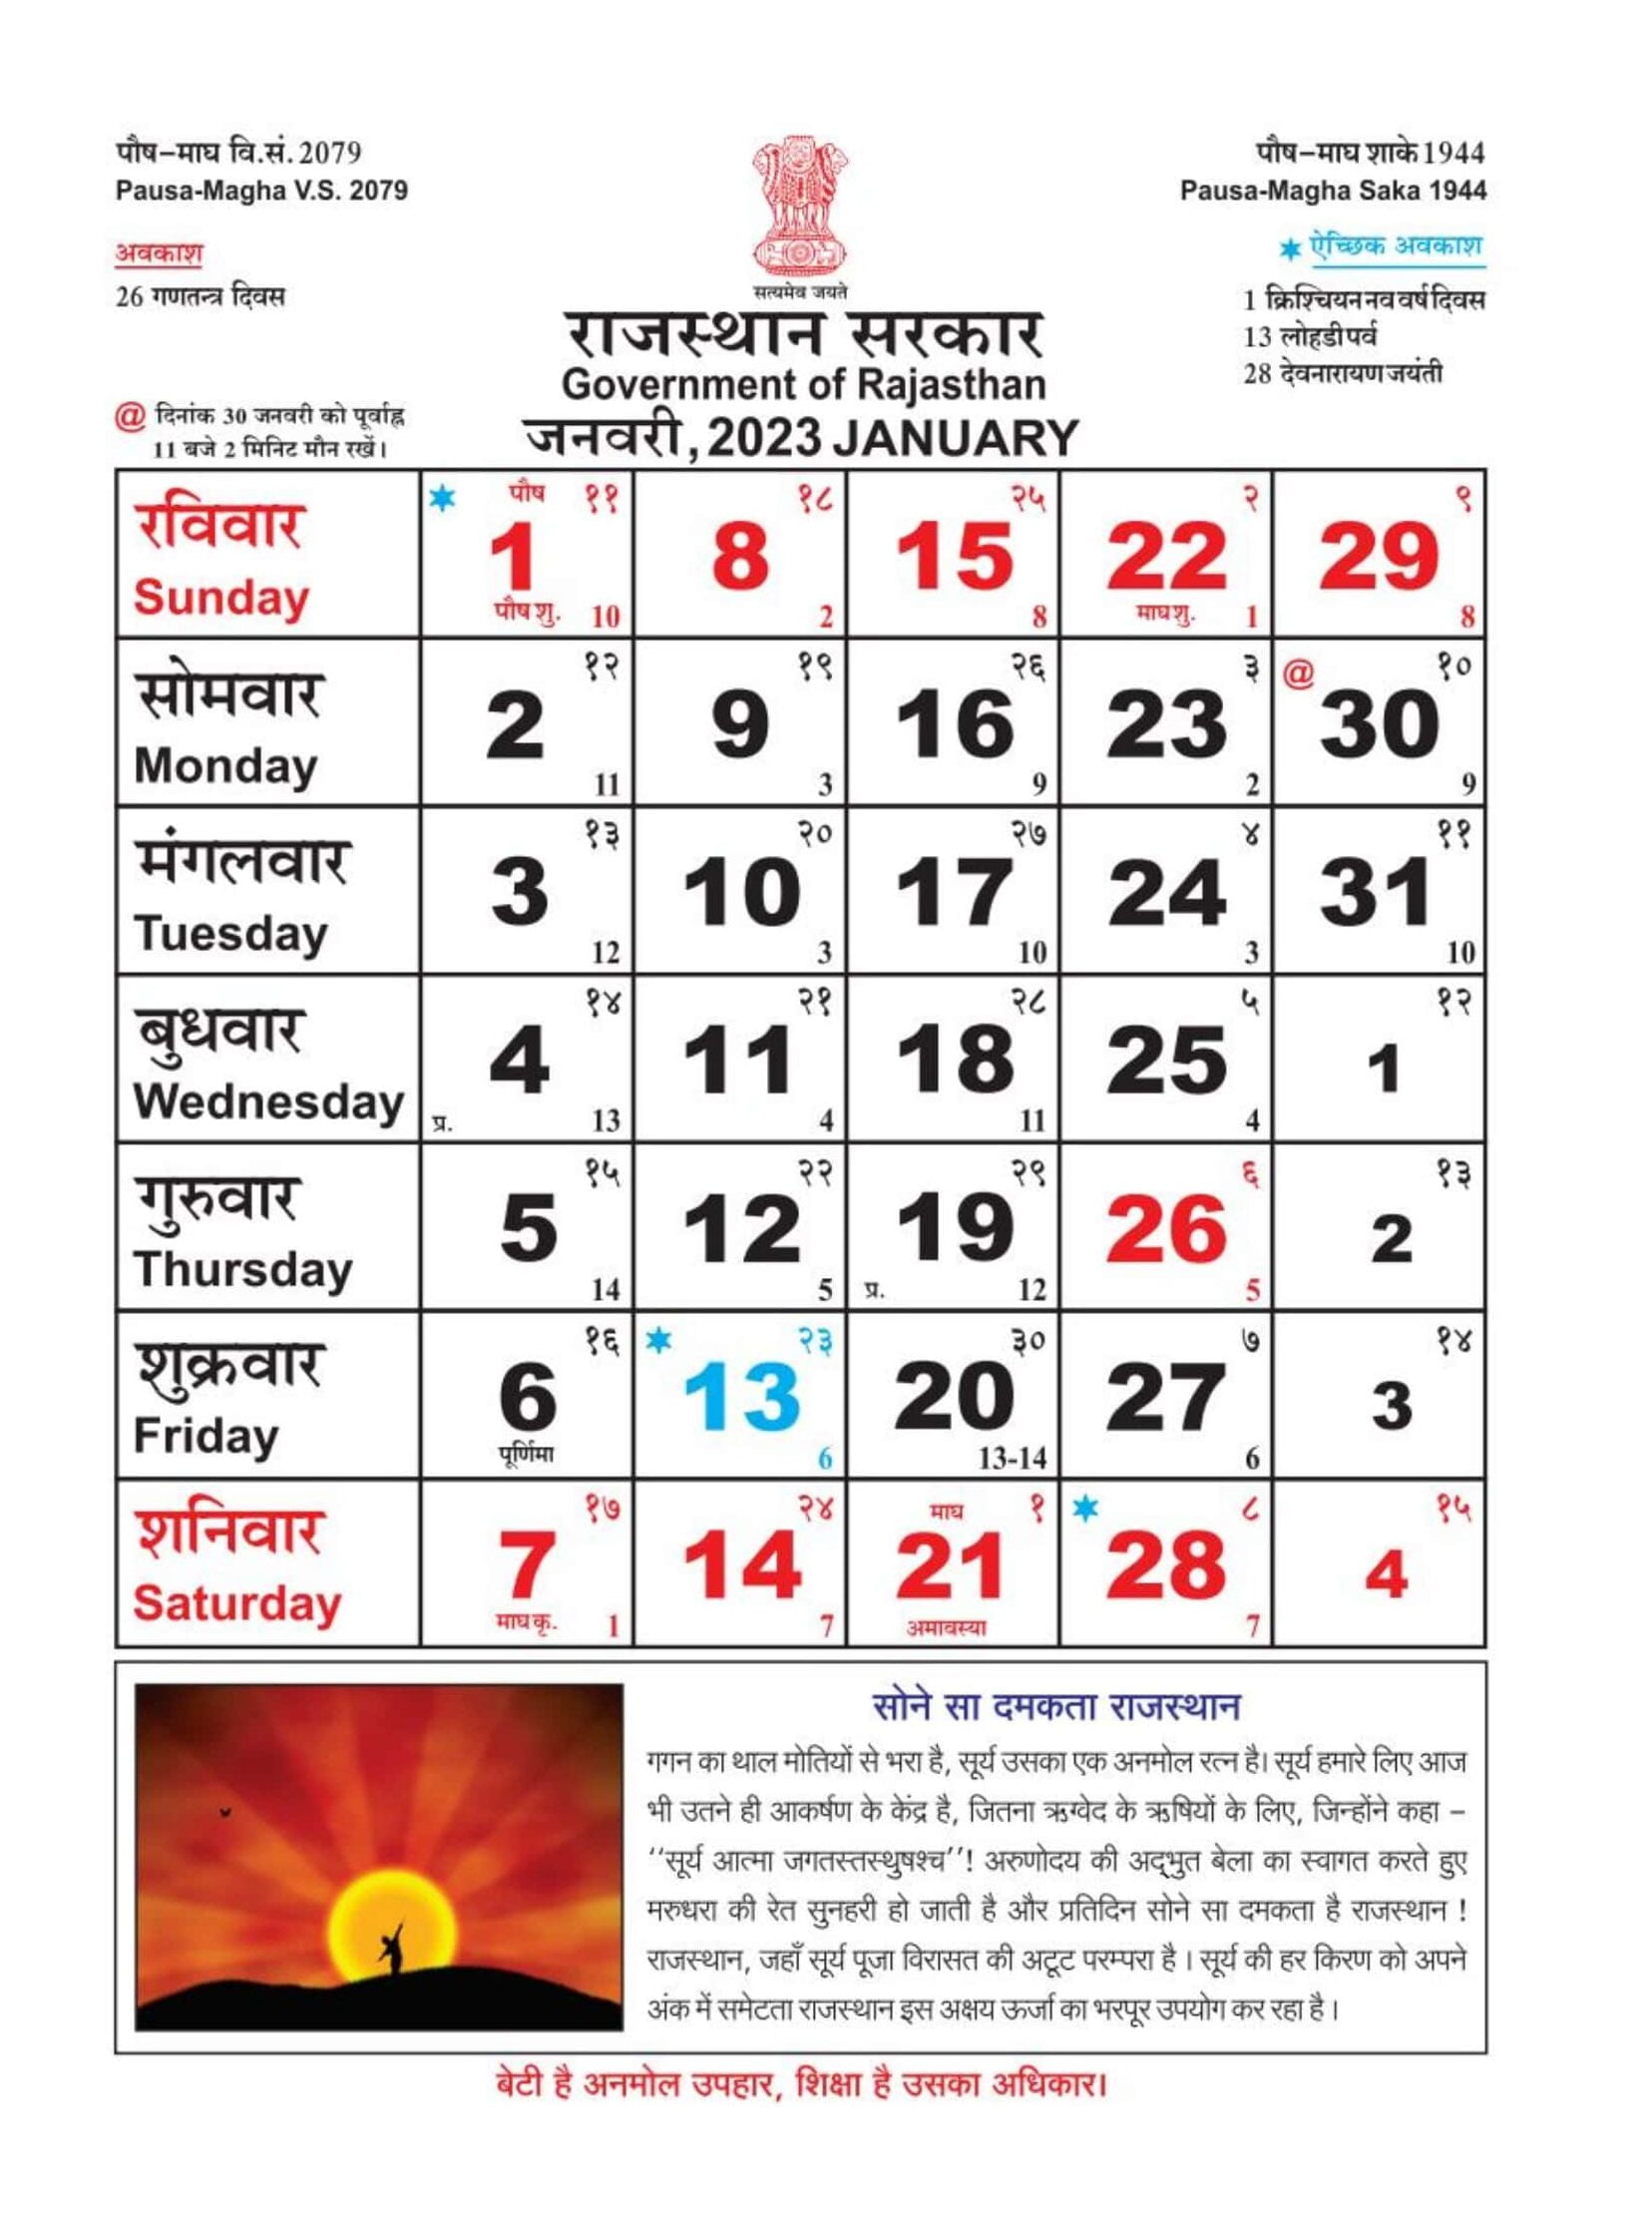 Rajasthan govt calendar 2023 pdf download